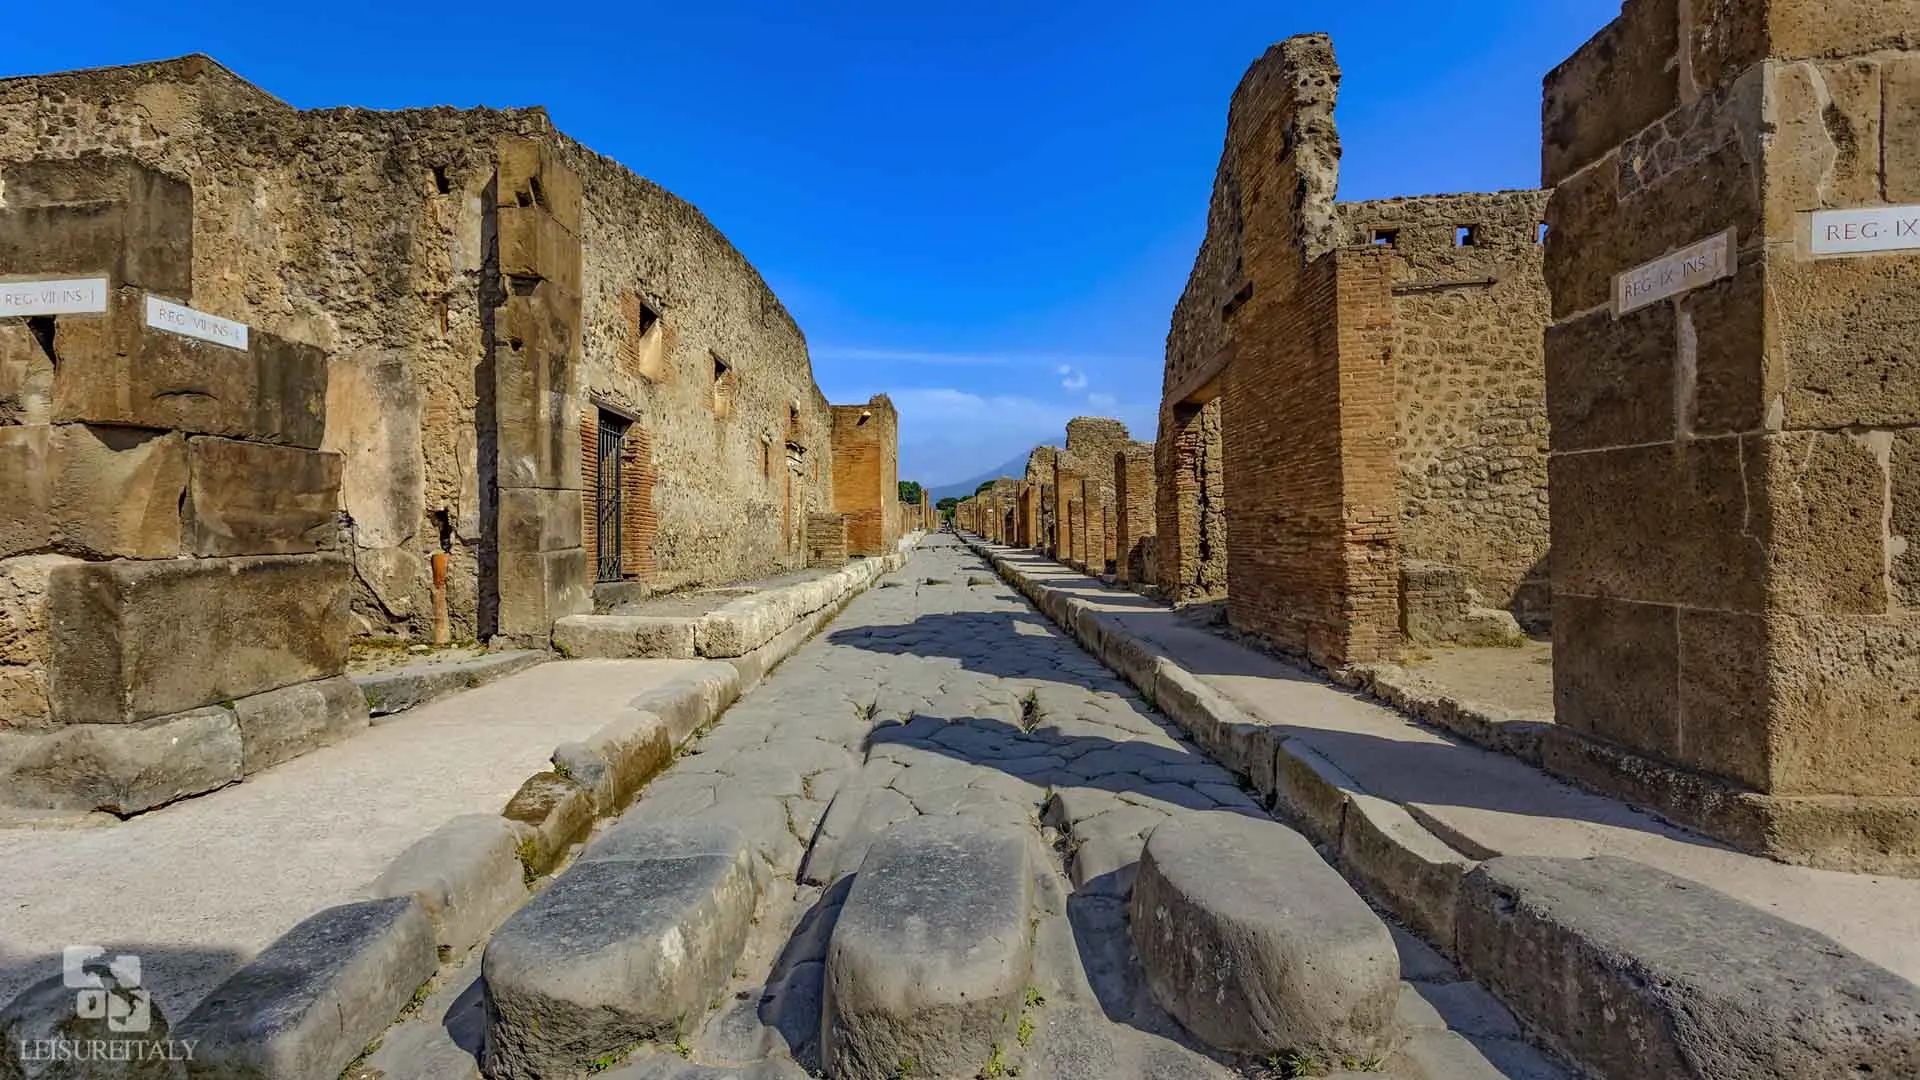 pompeii and herculaneum